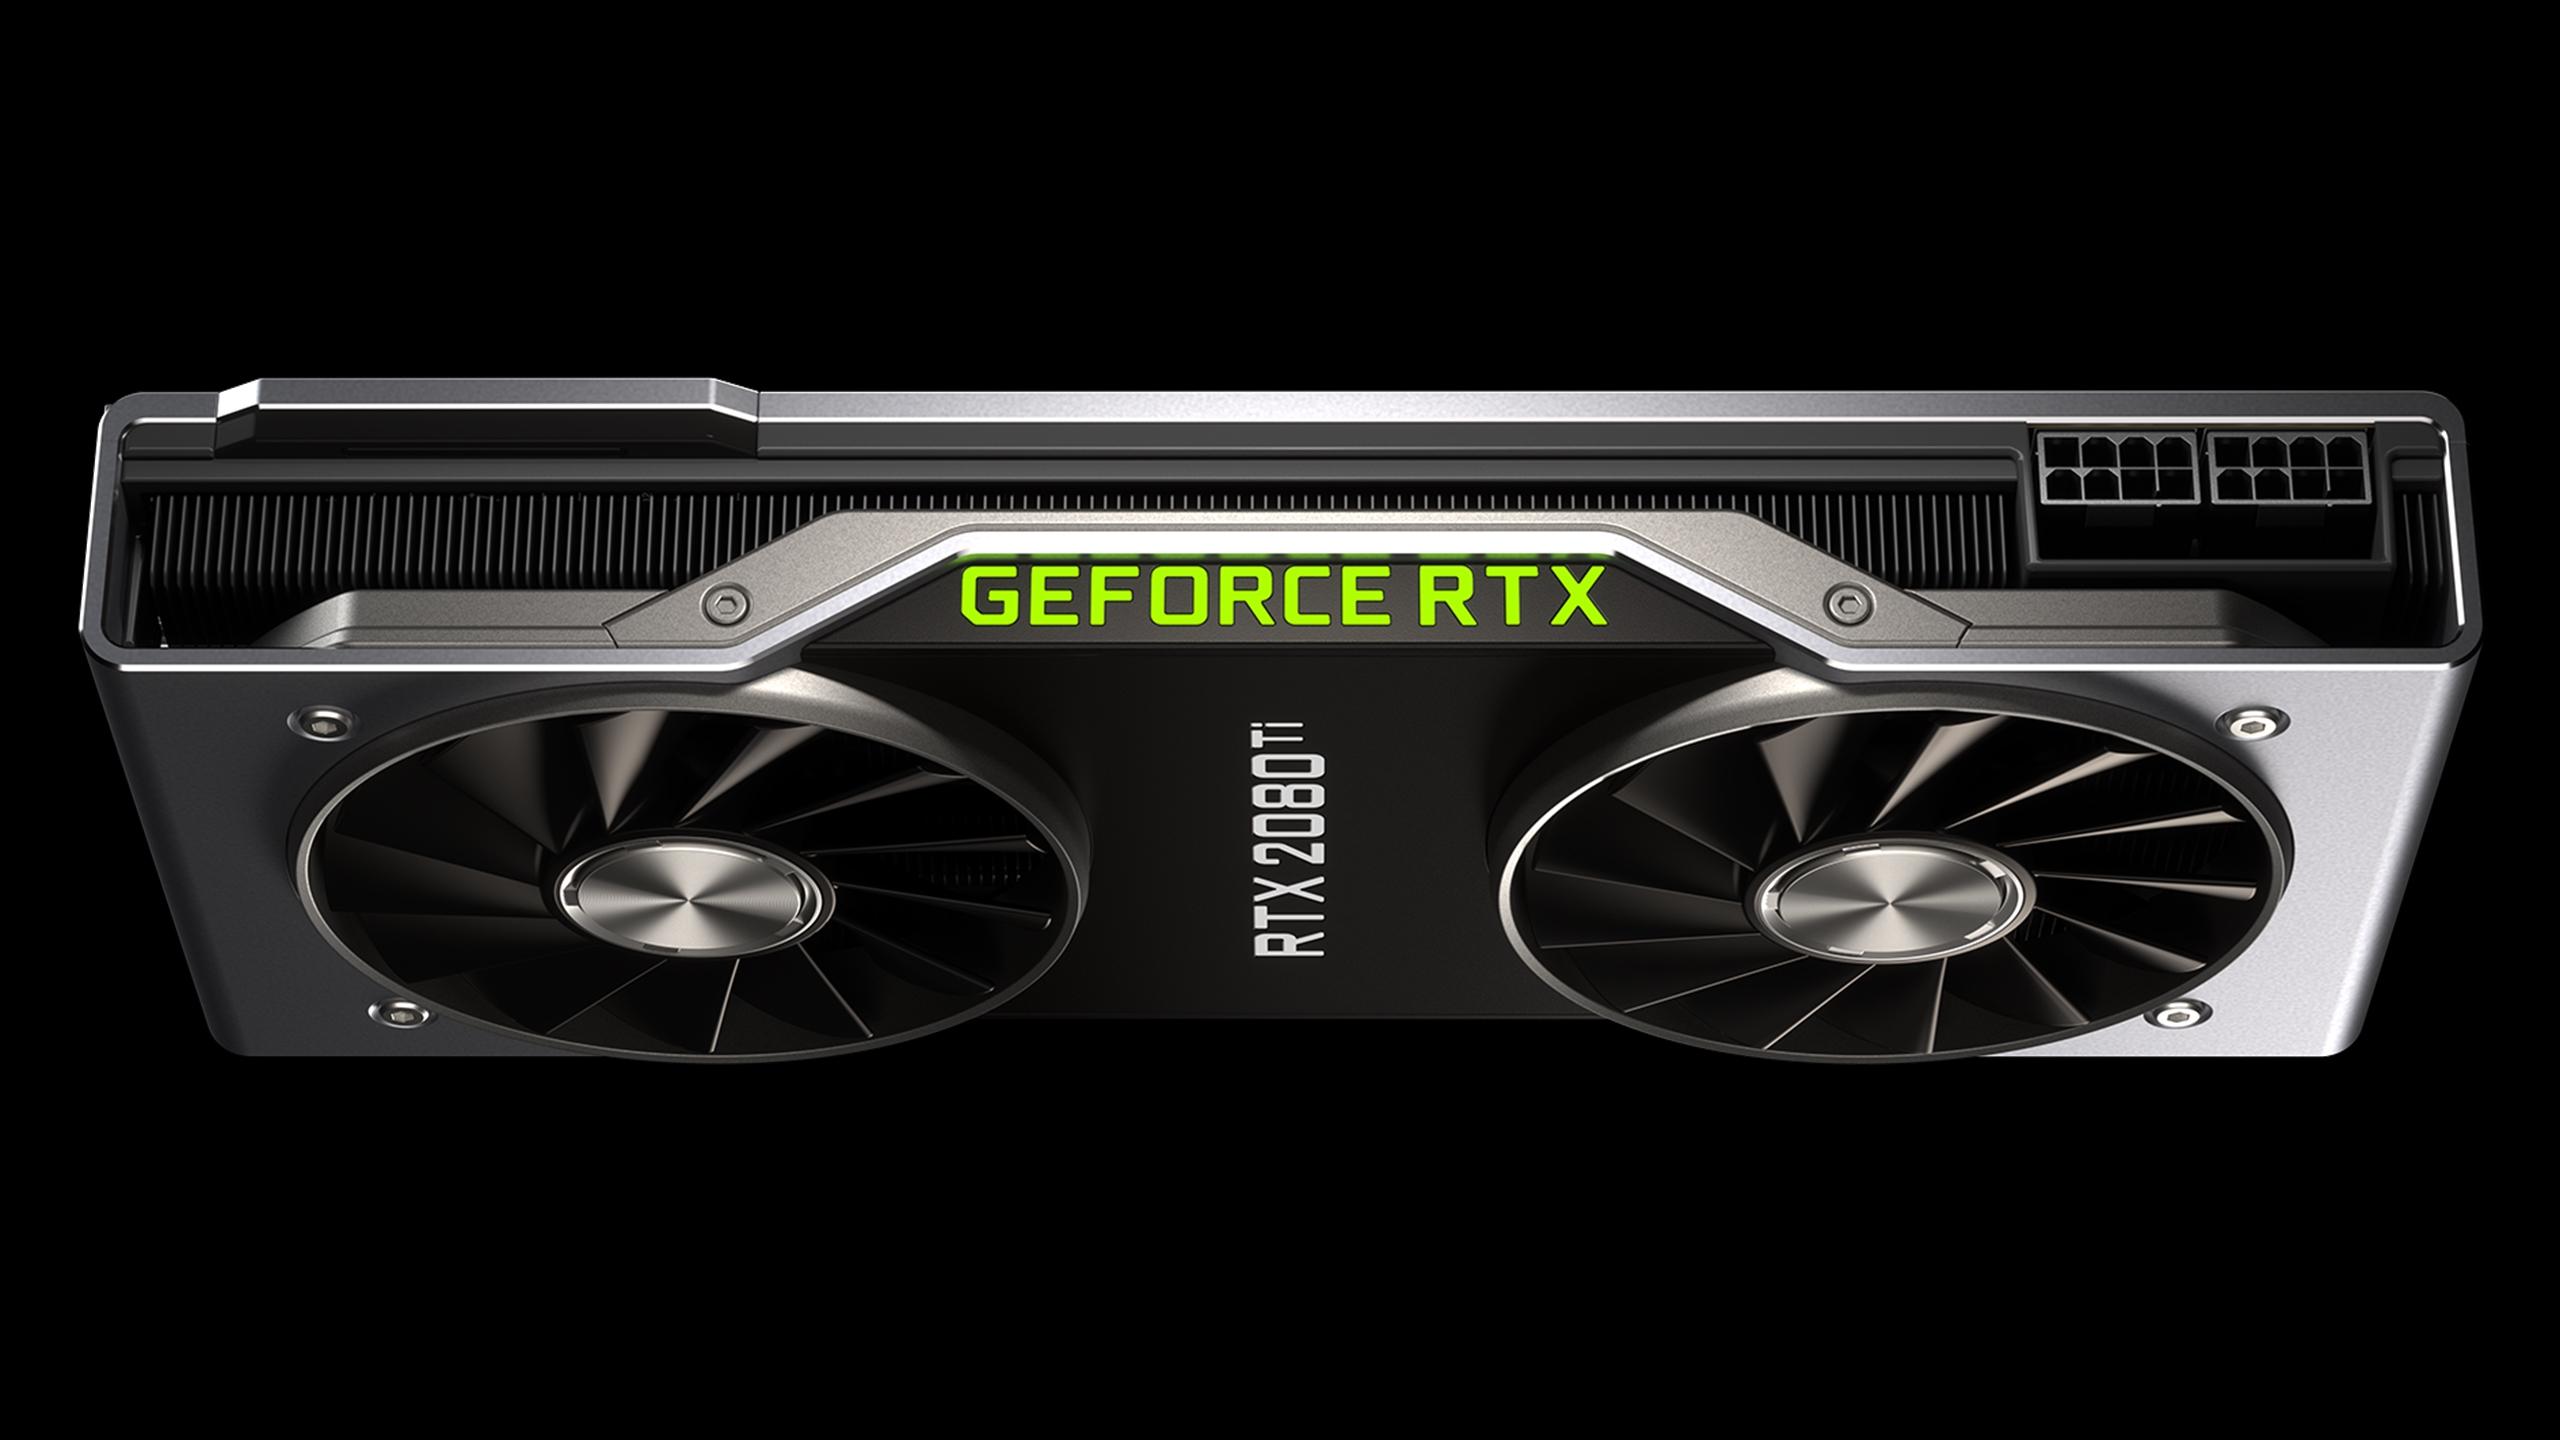 Nvidia GeForce RTX 2080 Ti: Technische Daten, Preis und Release